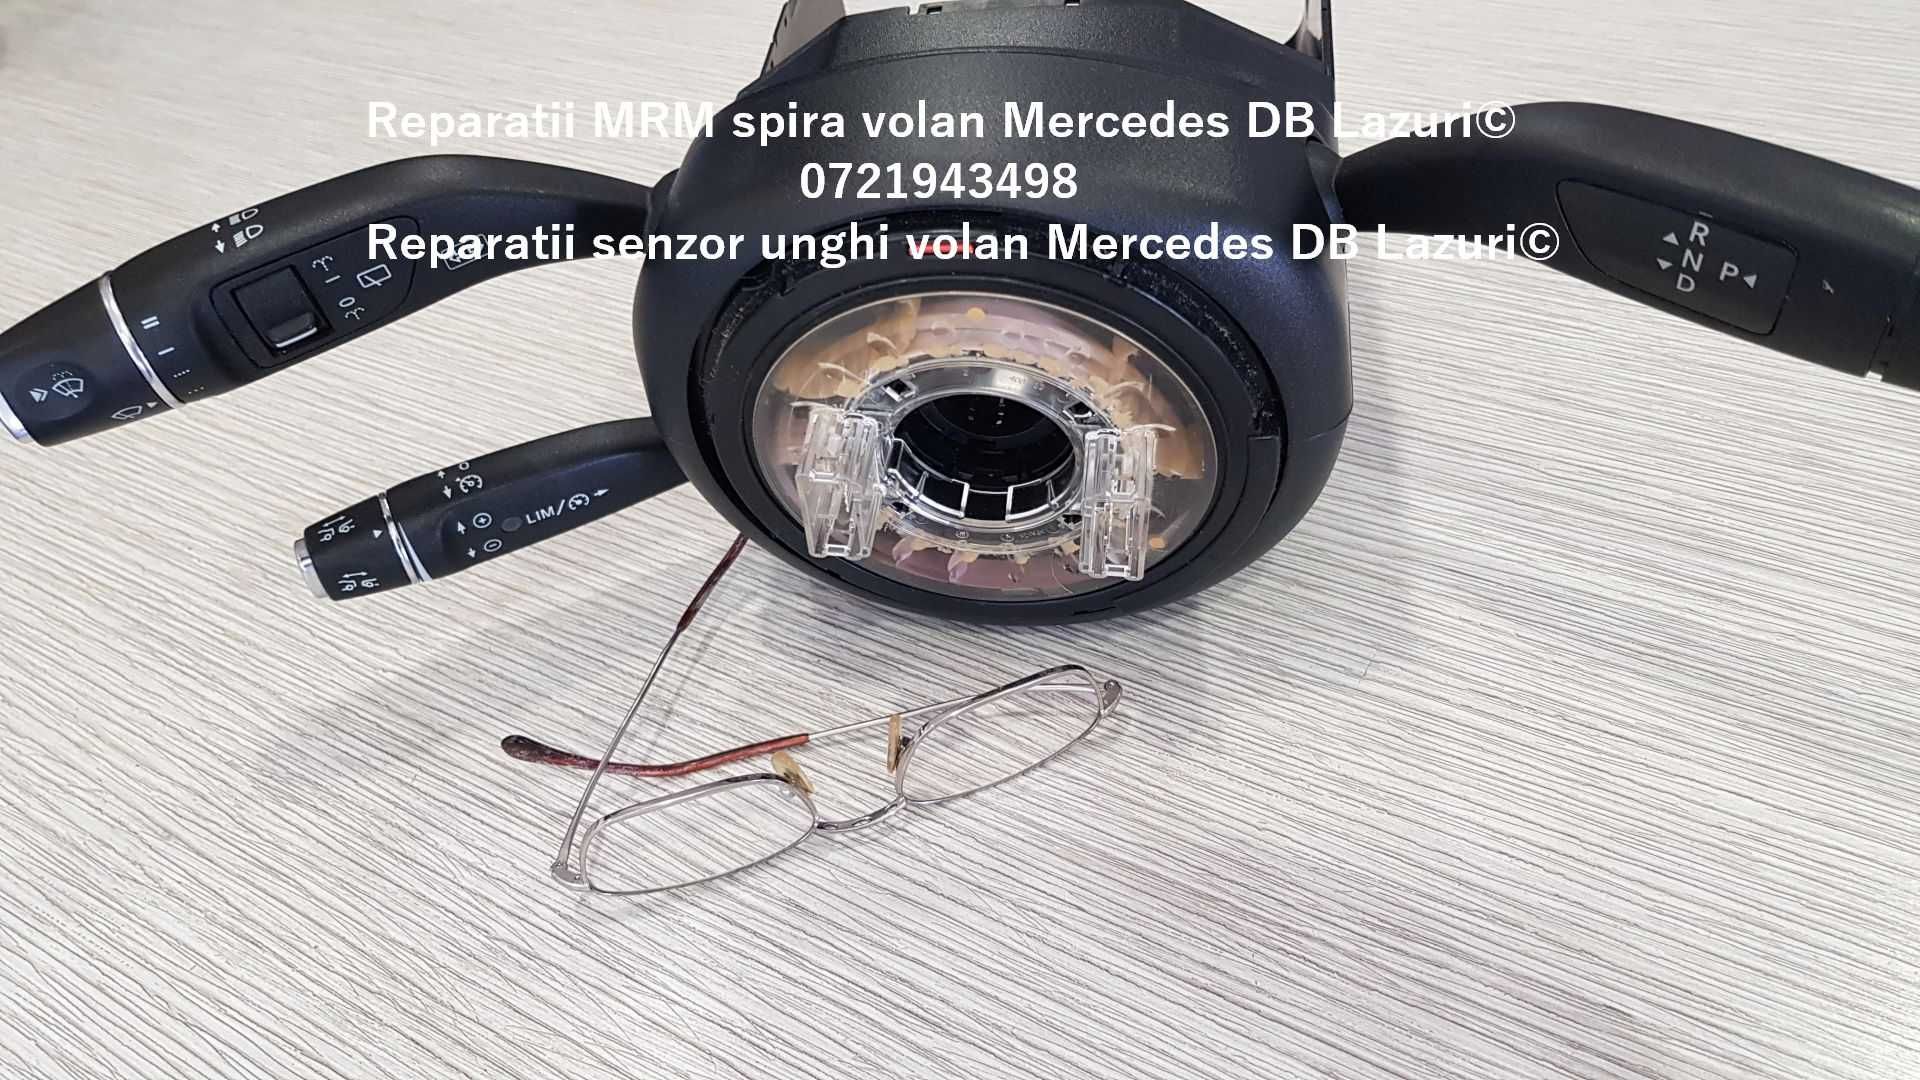 Senzor unghi volan MRM Mercedes V class w447 spira volan